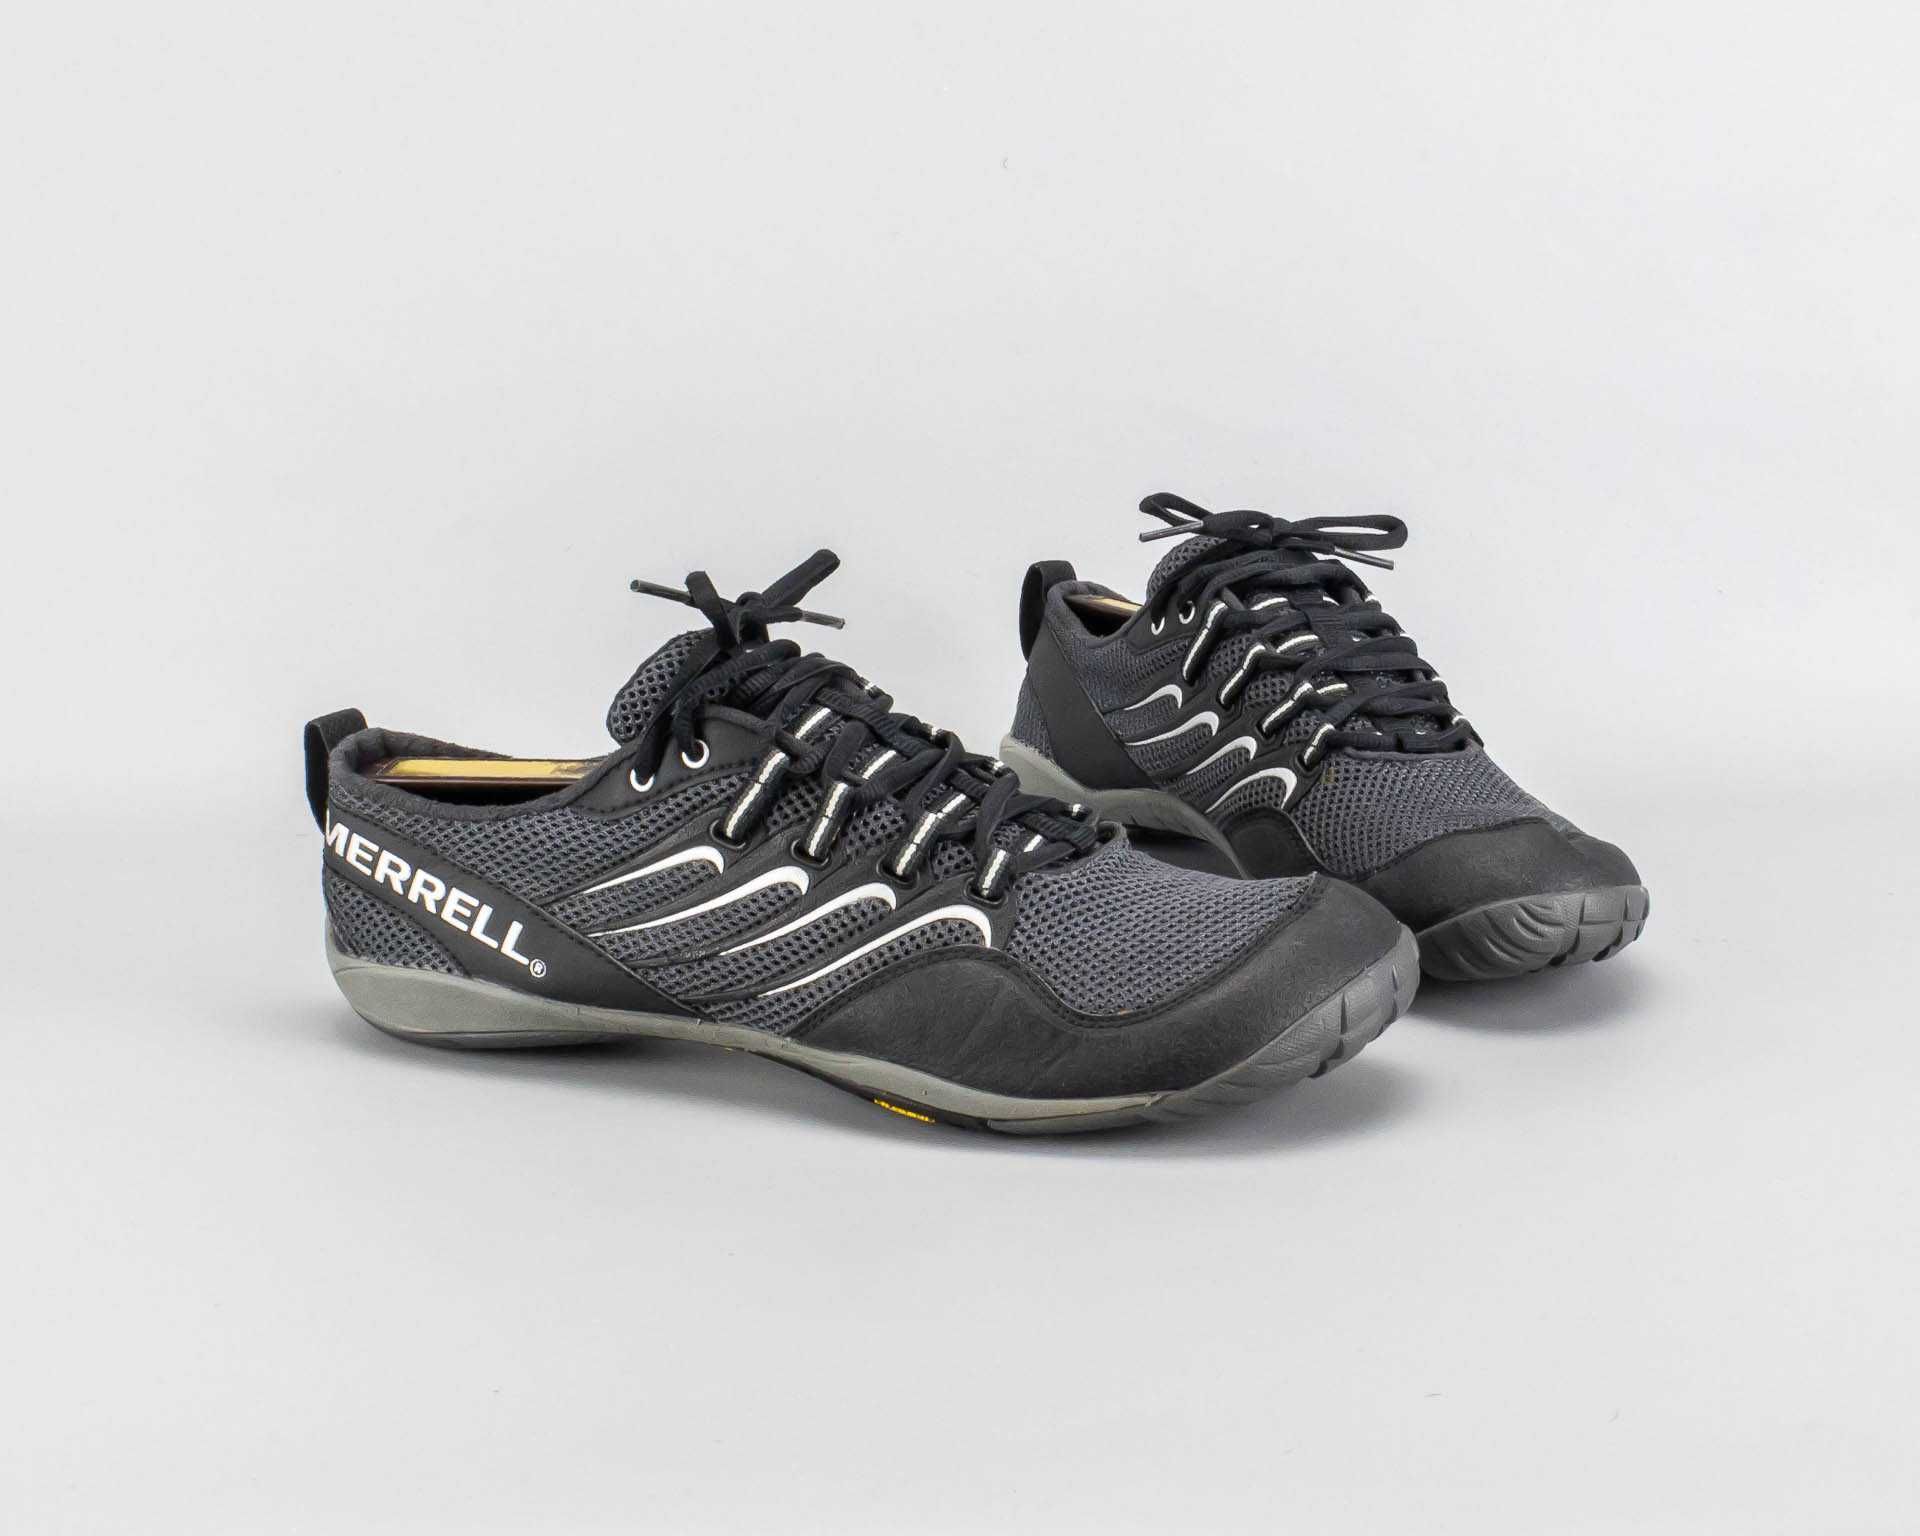 Легкие туристические кроссовки Merrell Barefoot.42,5 размер